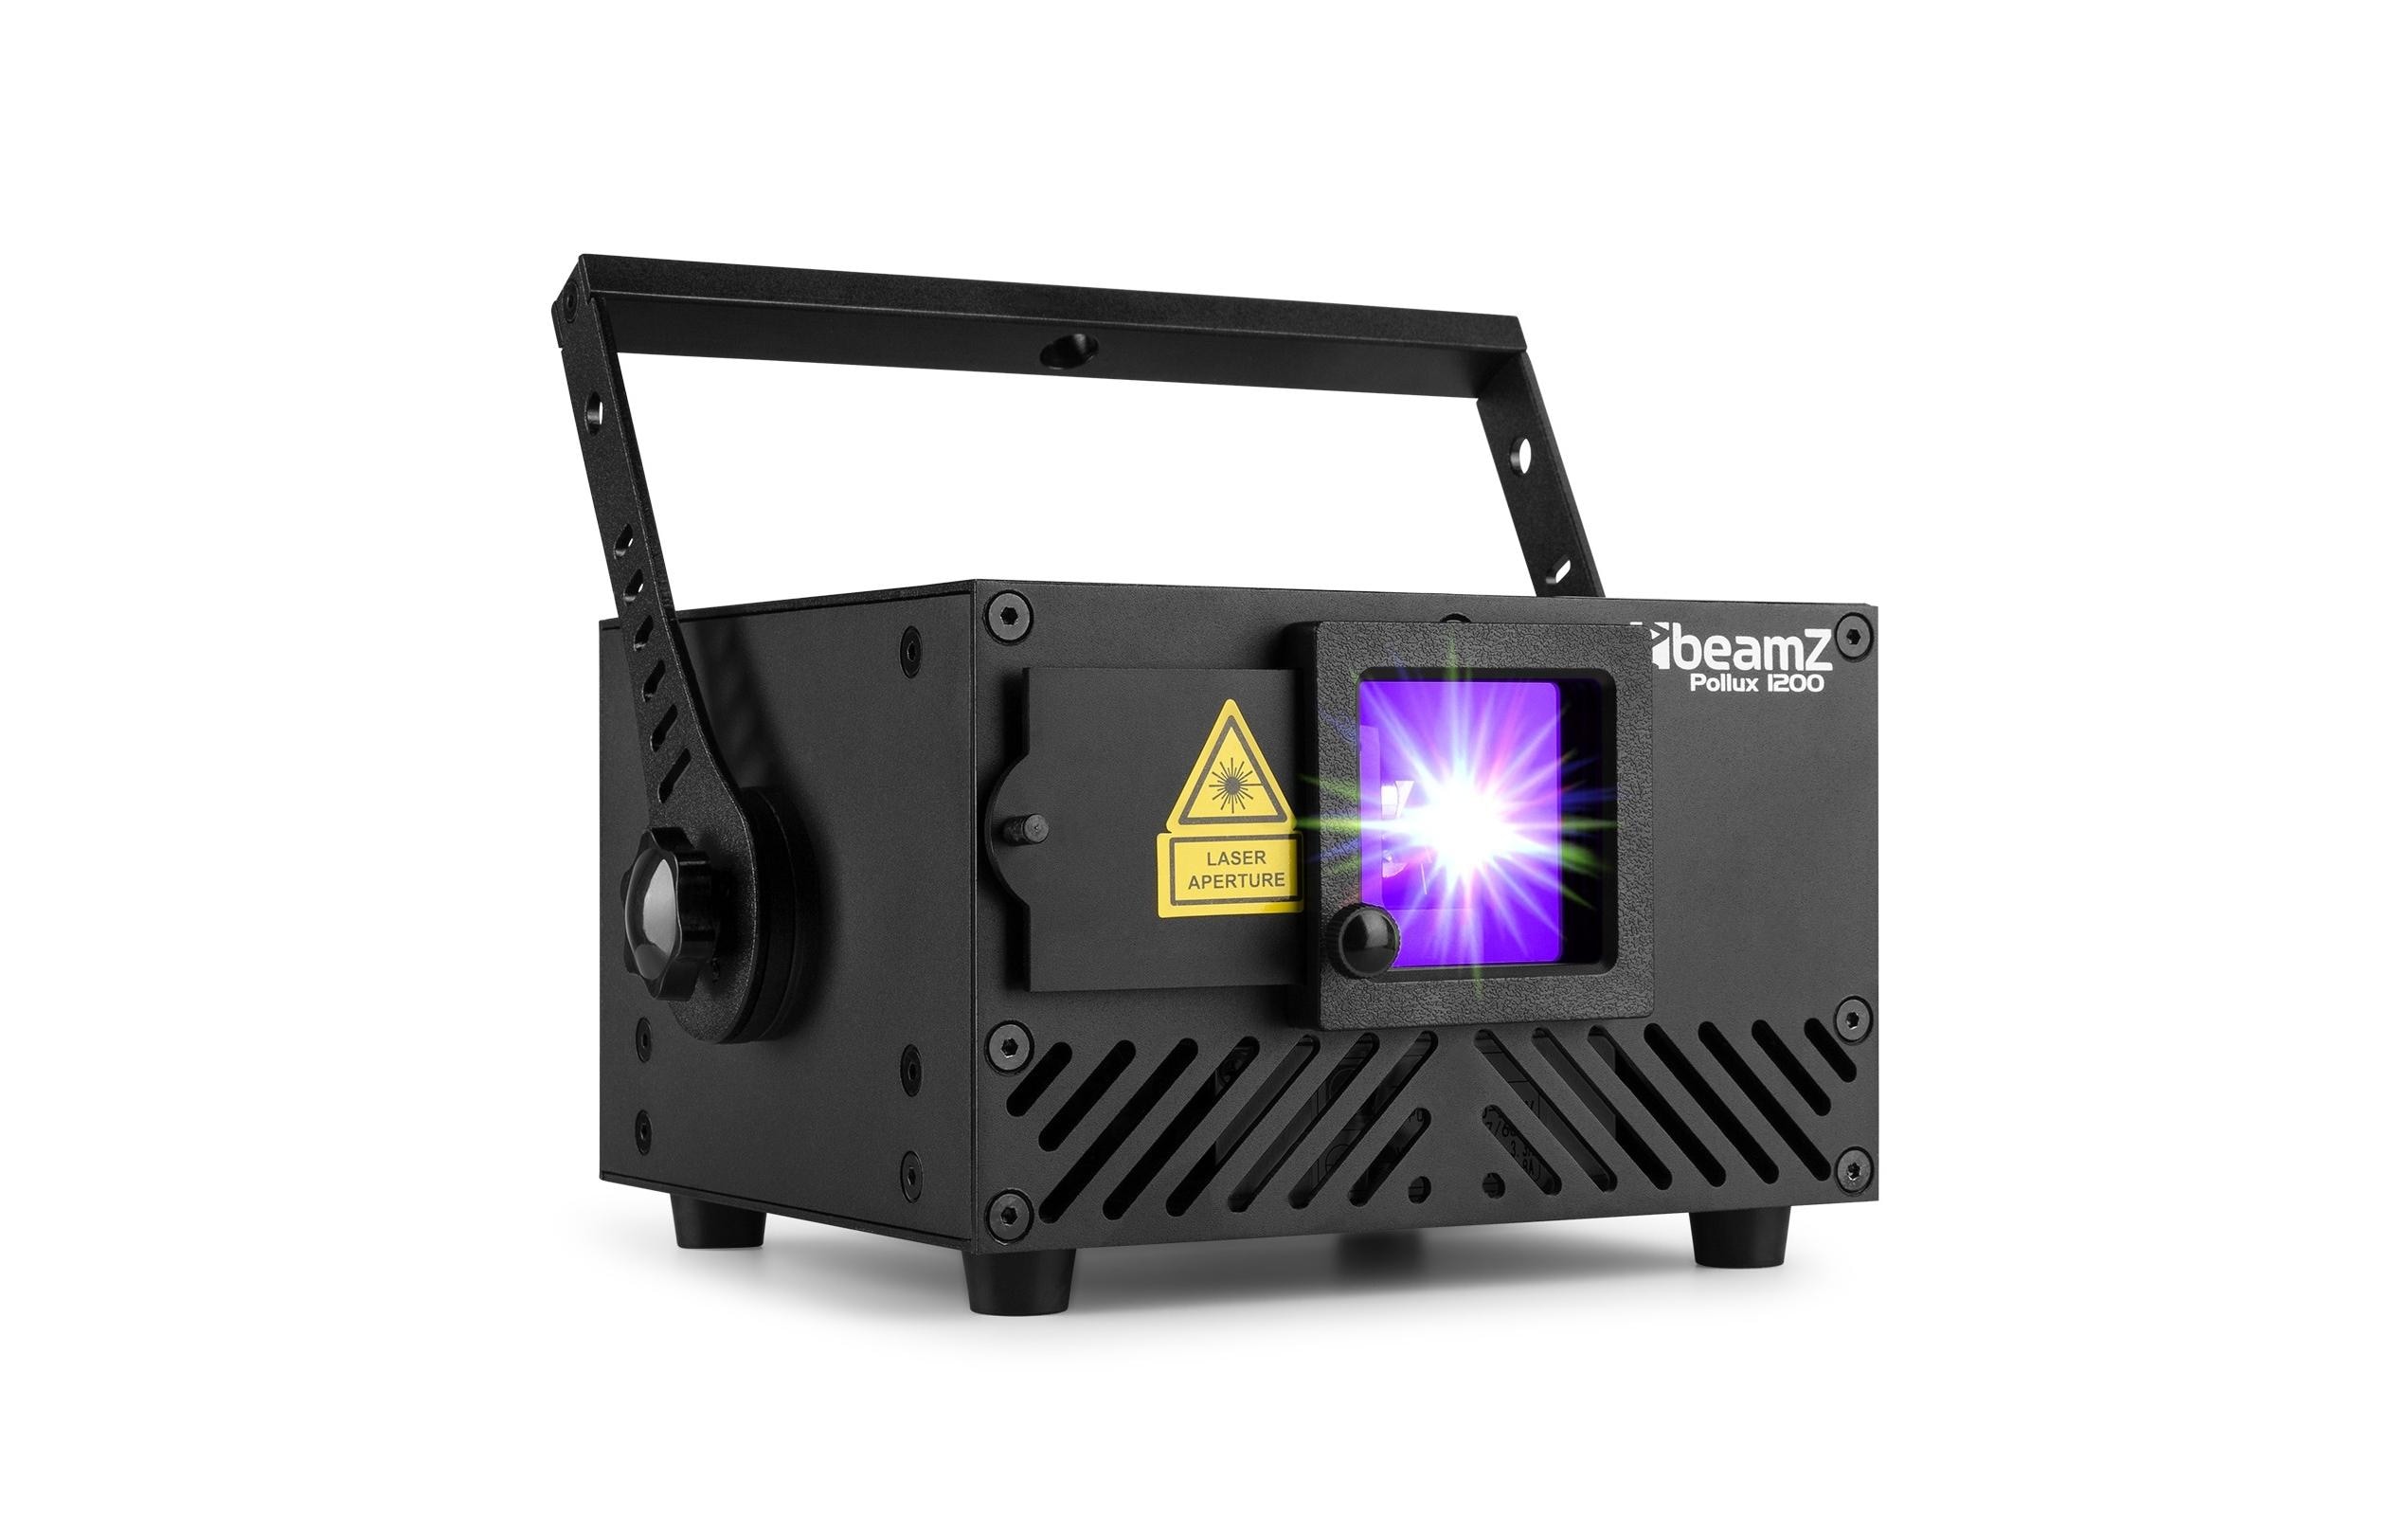 BeamZ Laser Pollux 1200